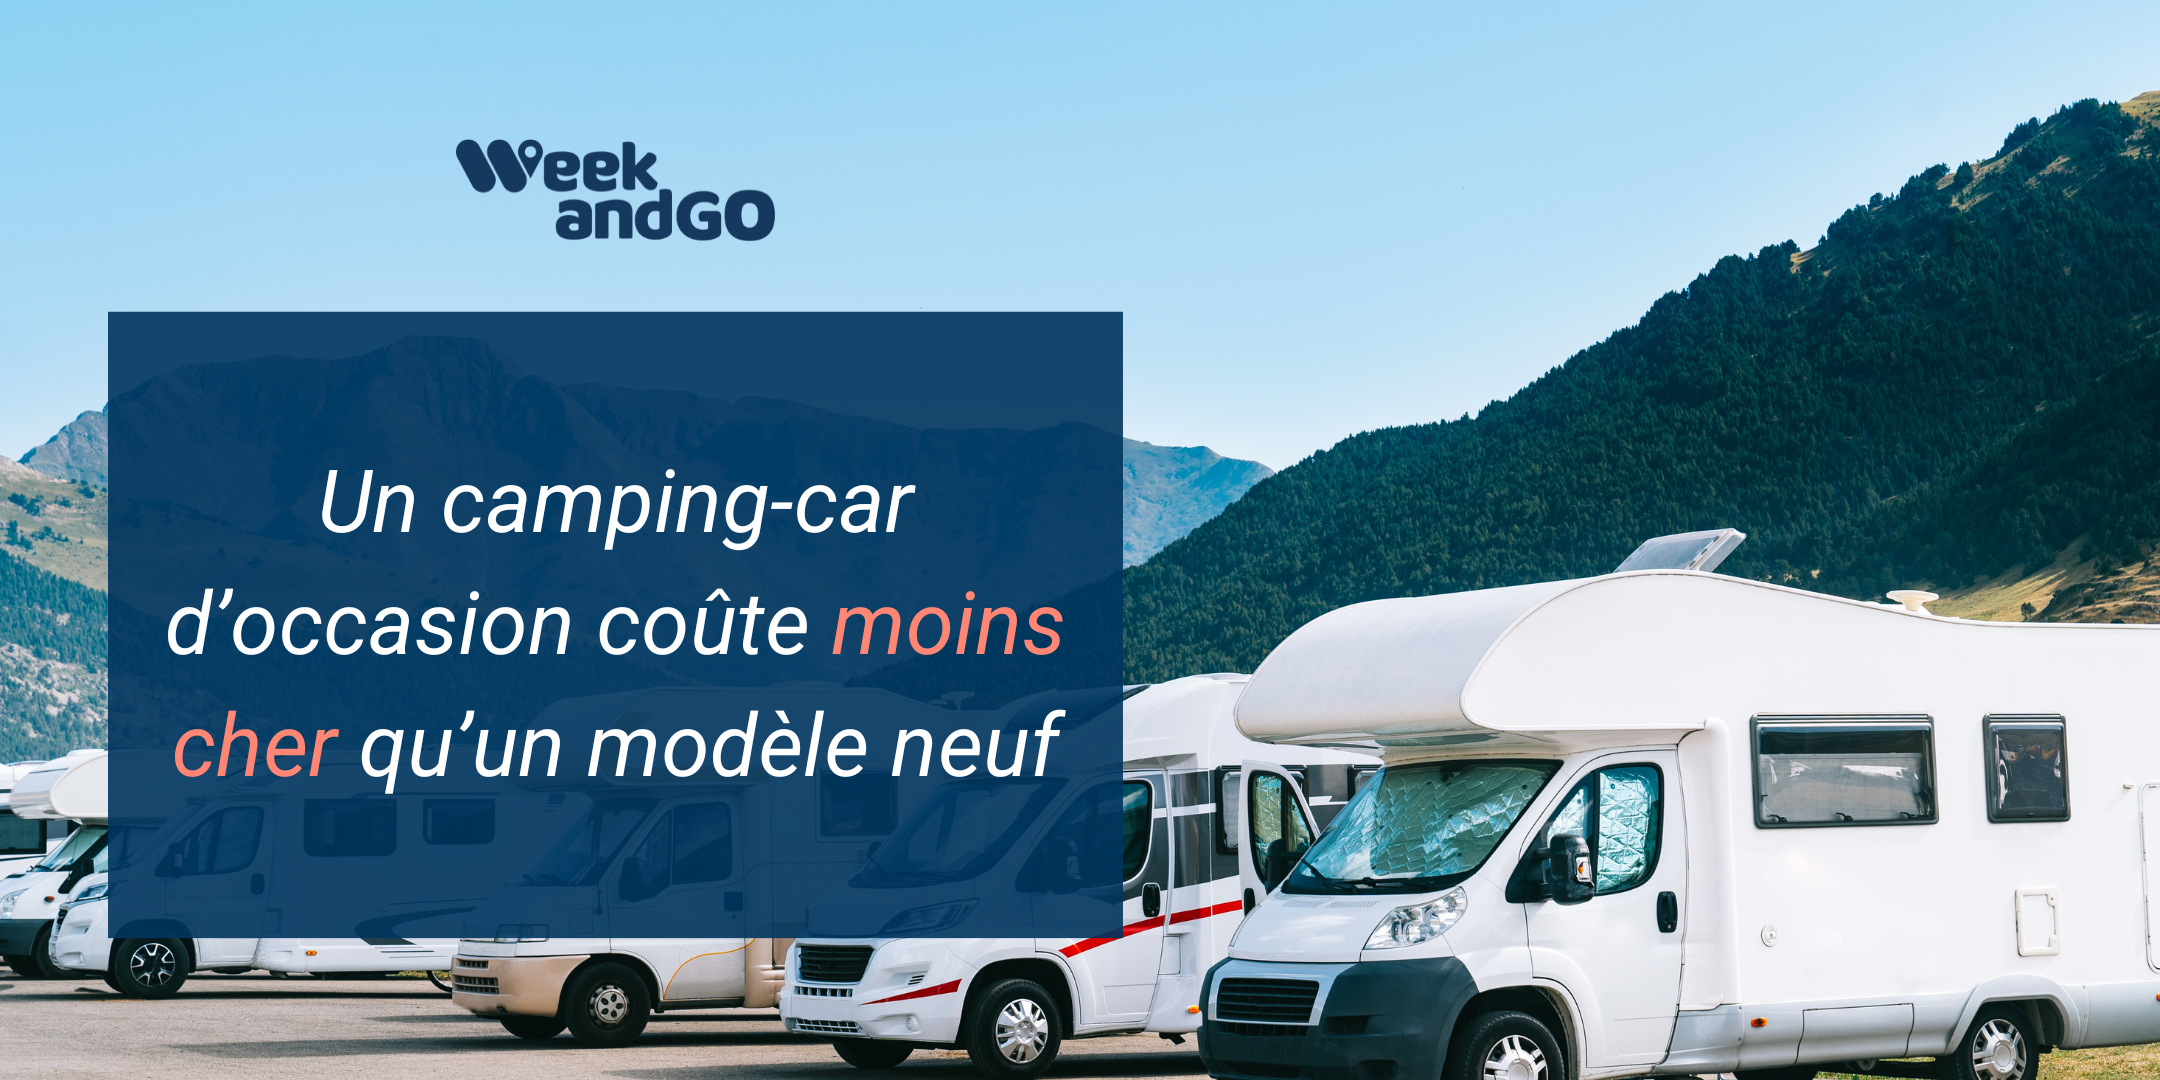 Un camping-car d’occasion coûte moins cher qu’un modèle neuf